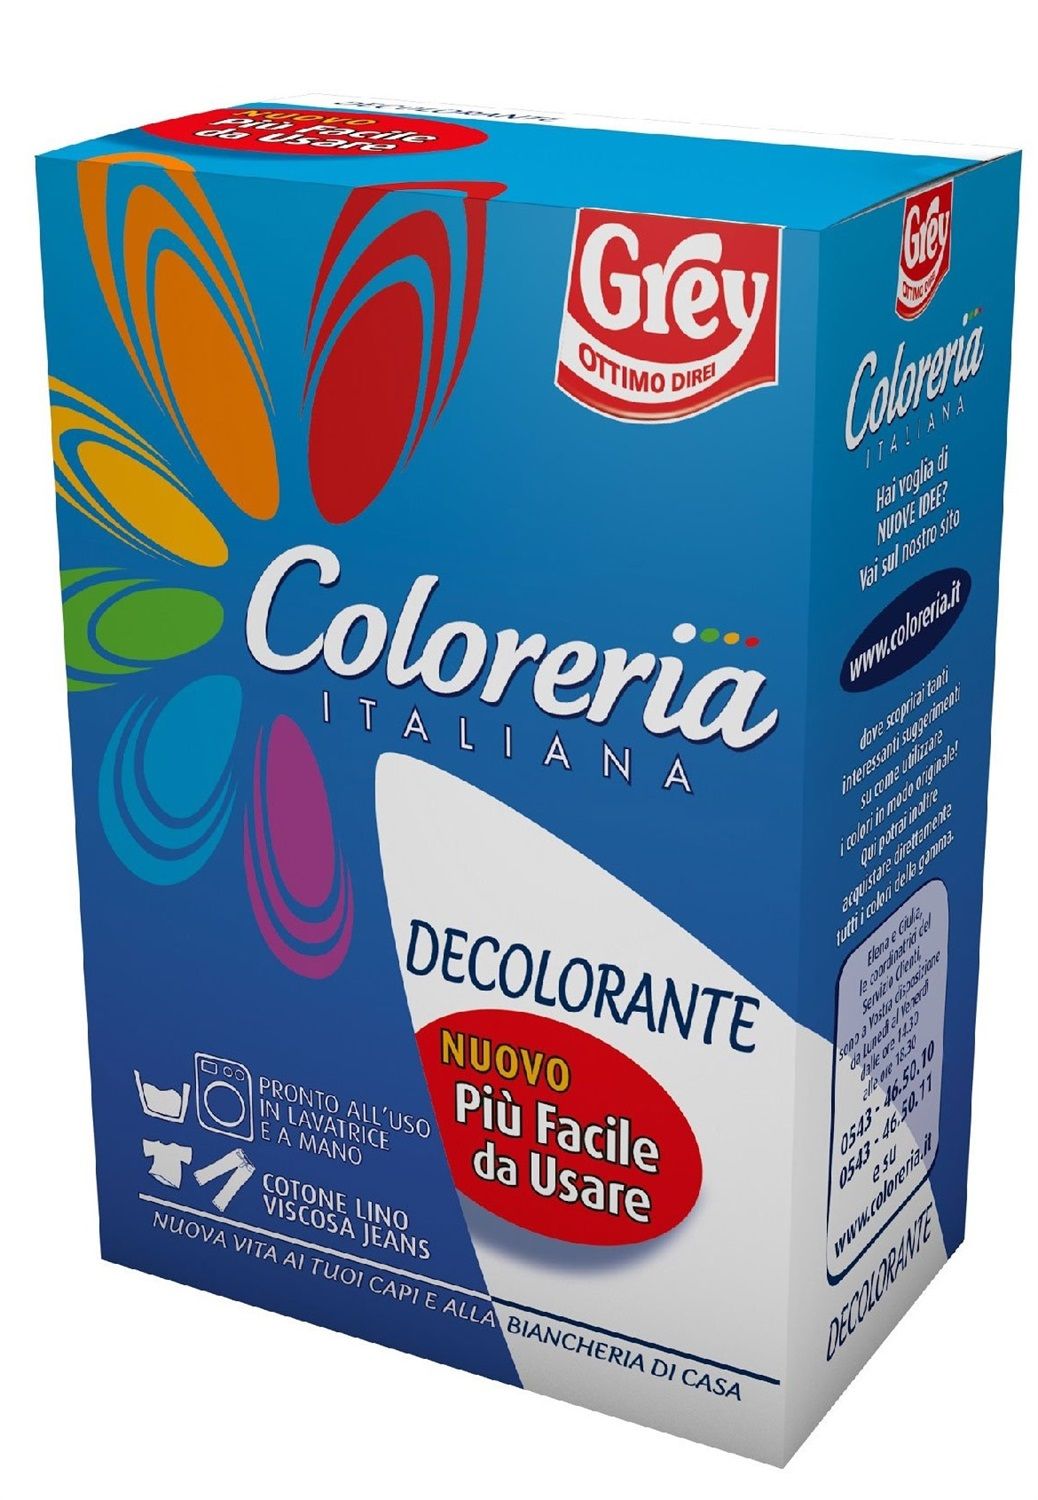 Coloreria Italiana Decolorante per tessuti, Confronta prezzi